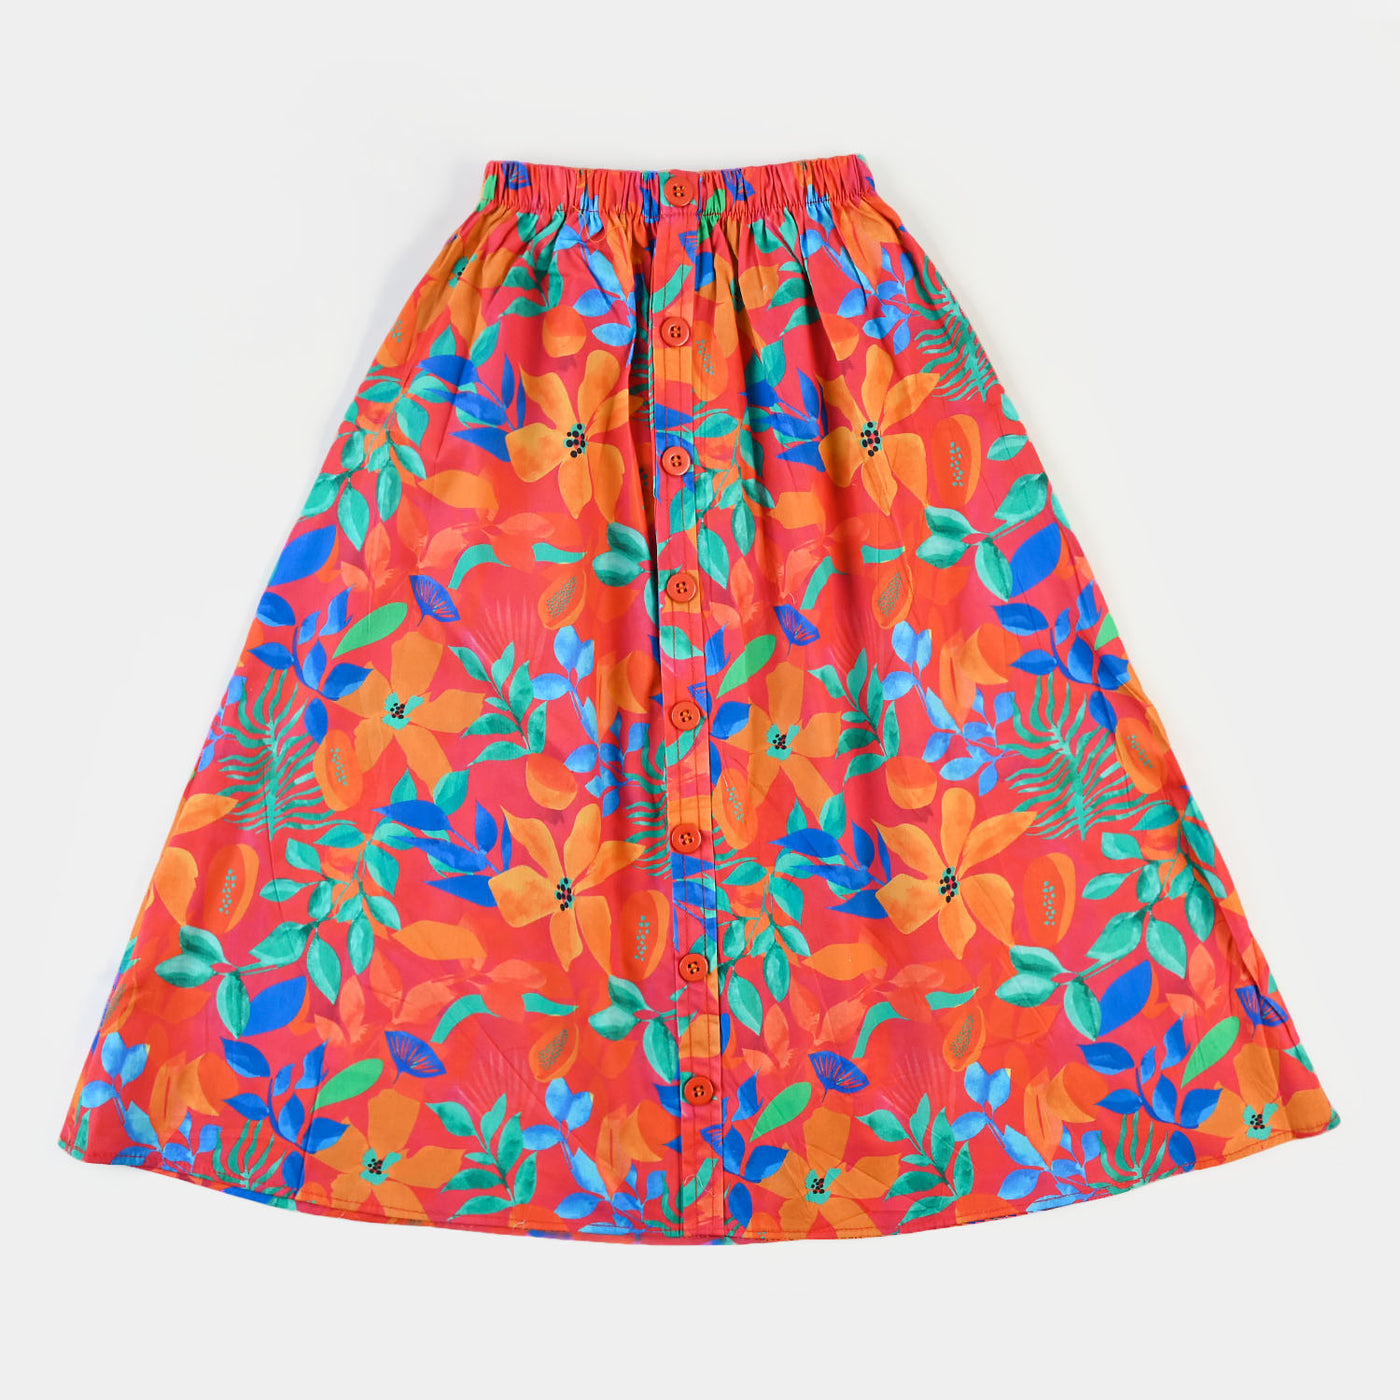 Girls Digital Print Long Skirt - Multi